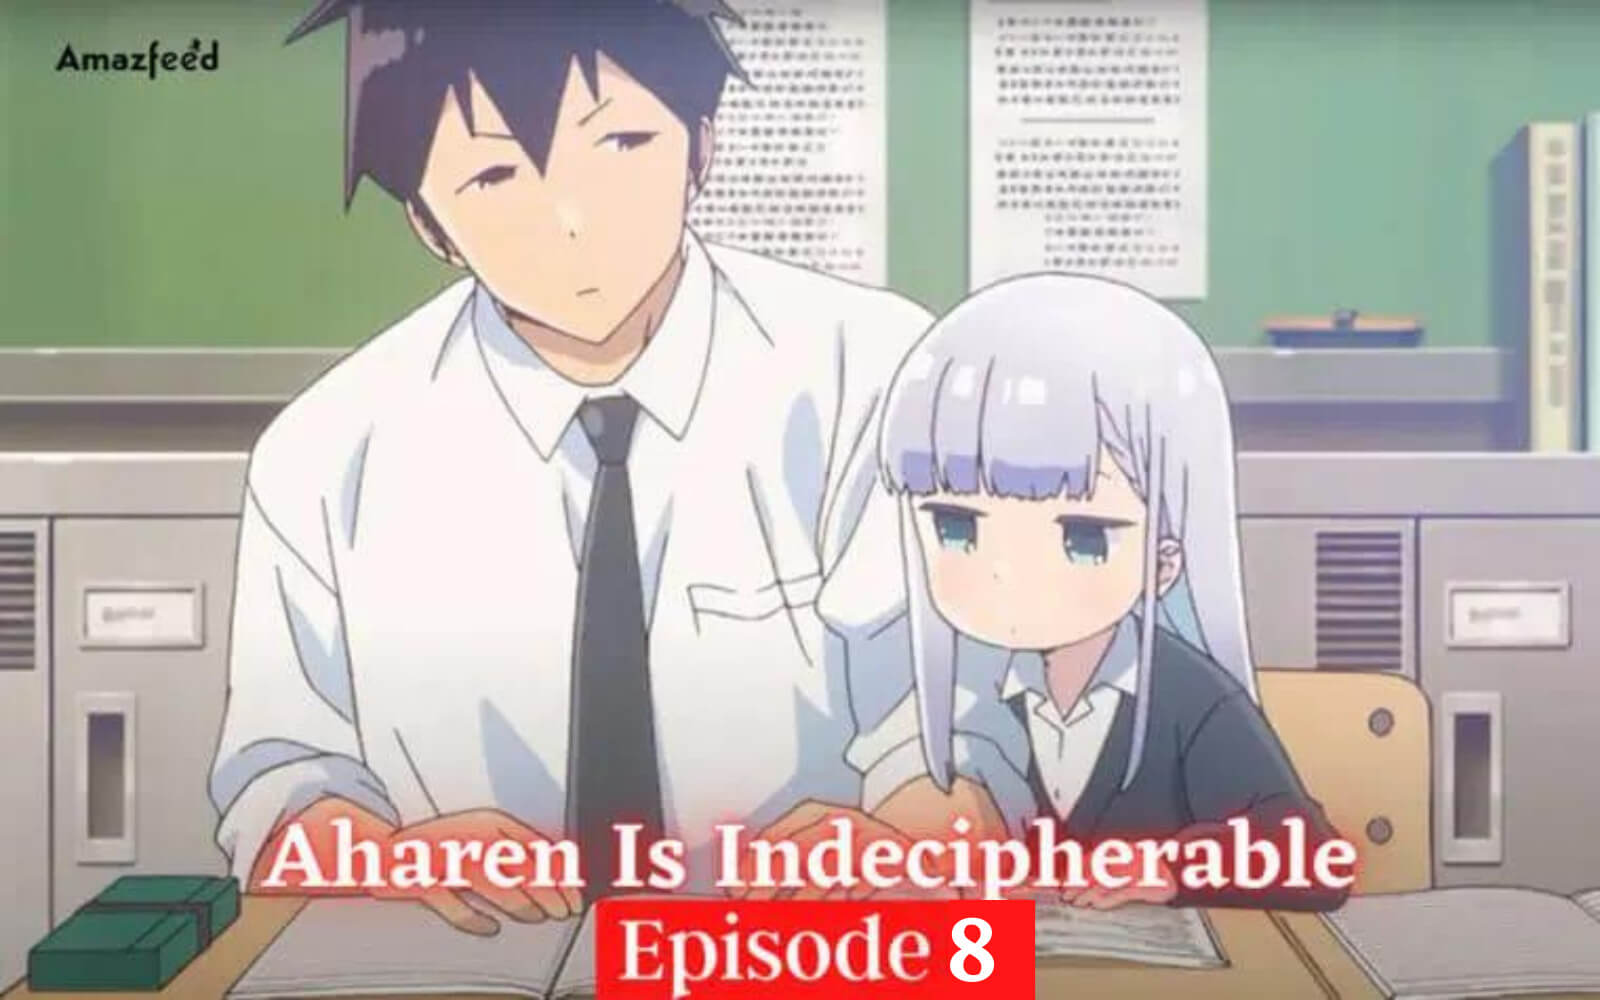 Aharen Is Indecipherable Season 1 Episode 8 Release date